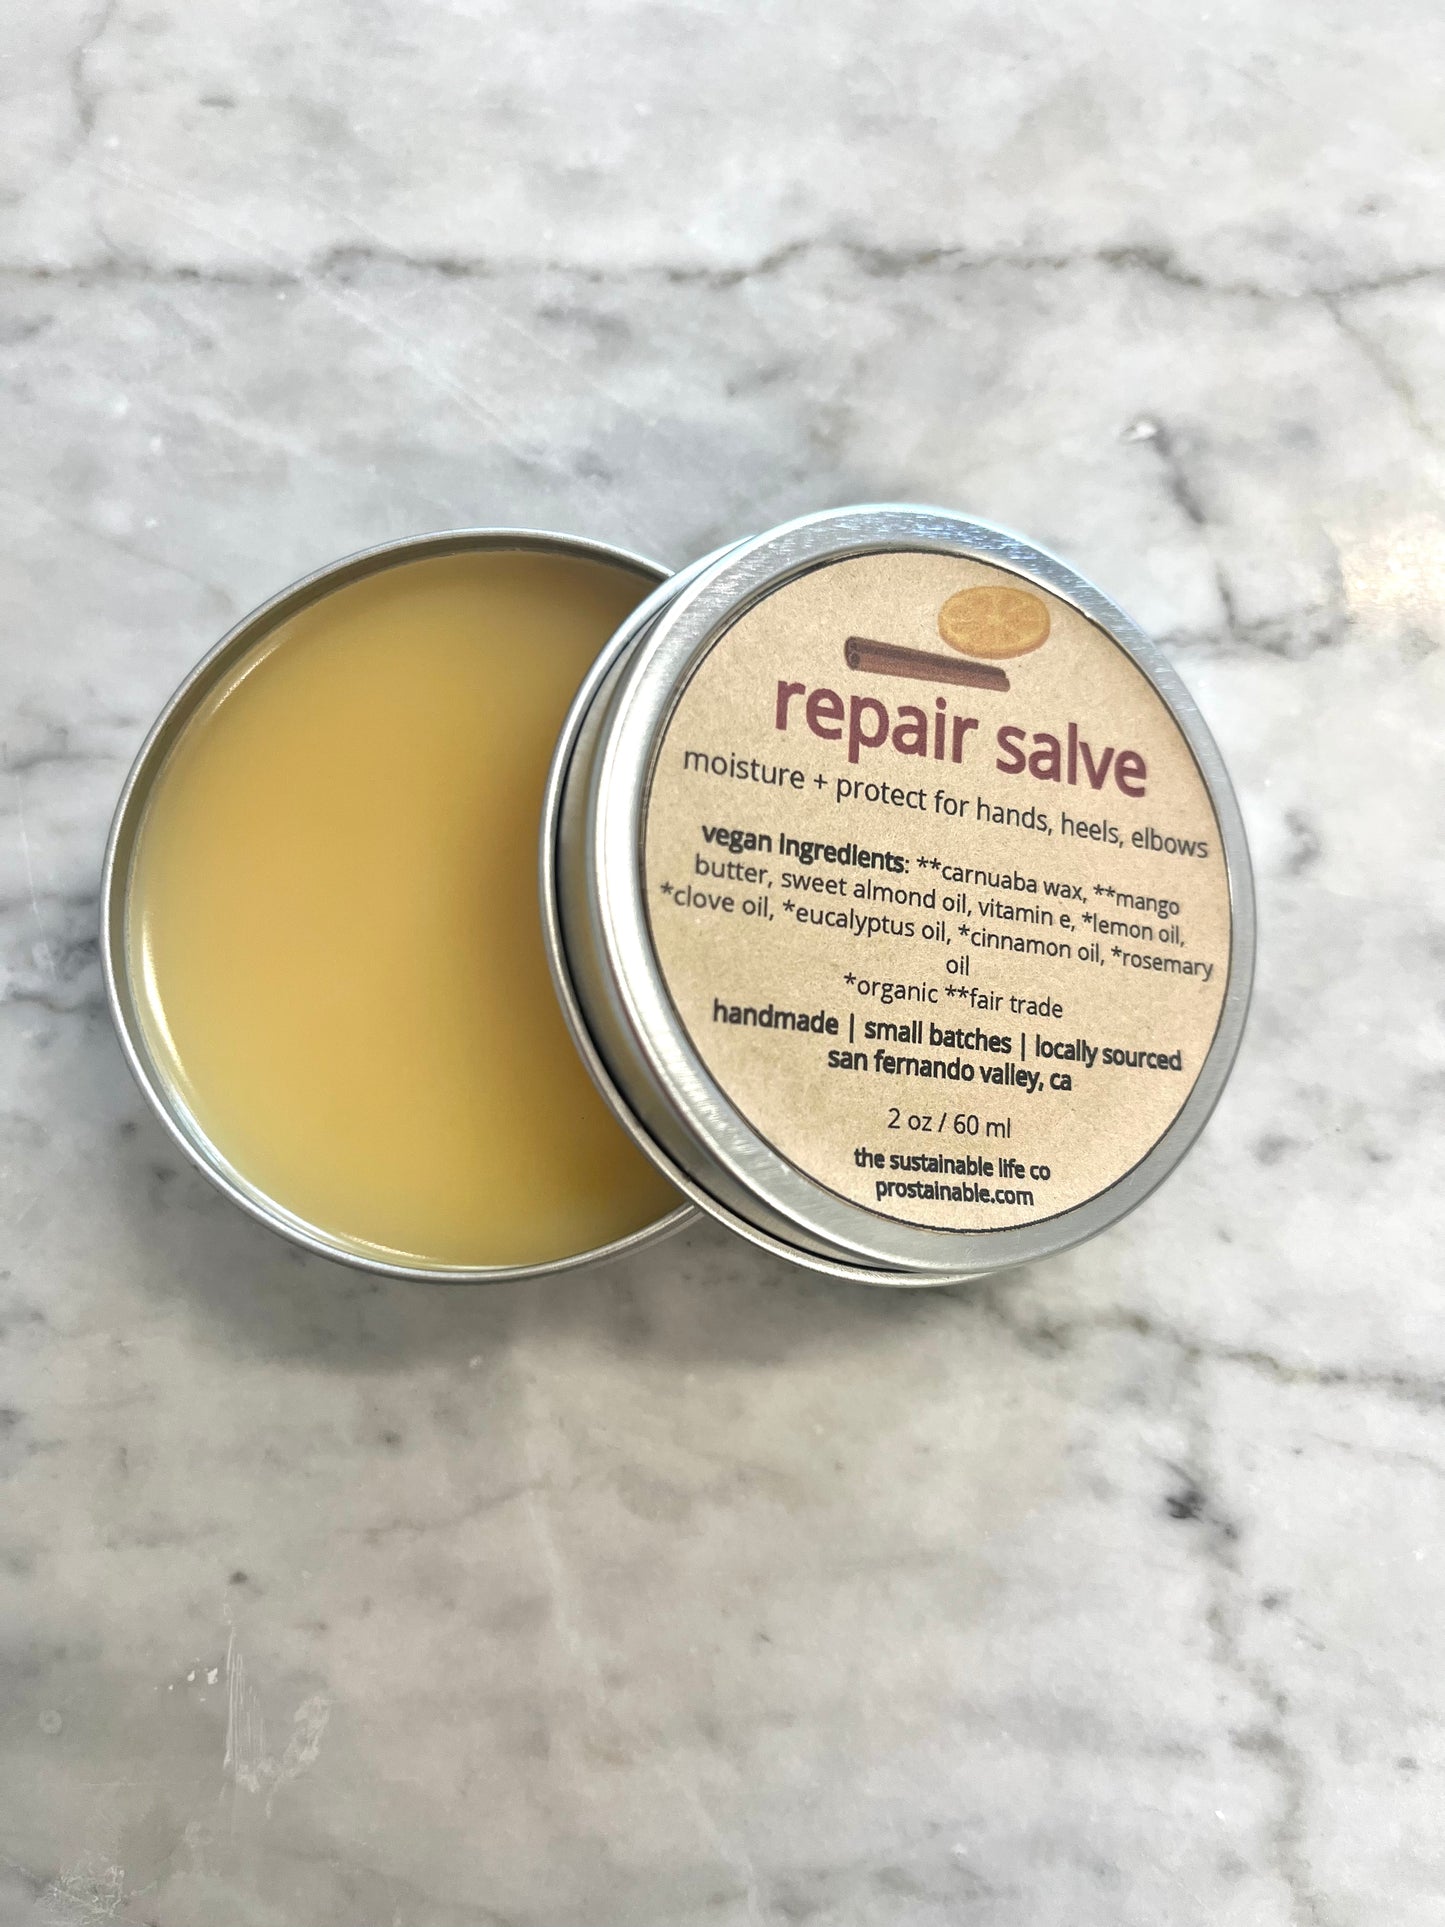 repair salve (deep moisture for hands)